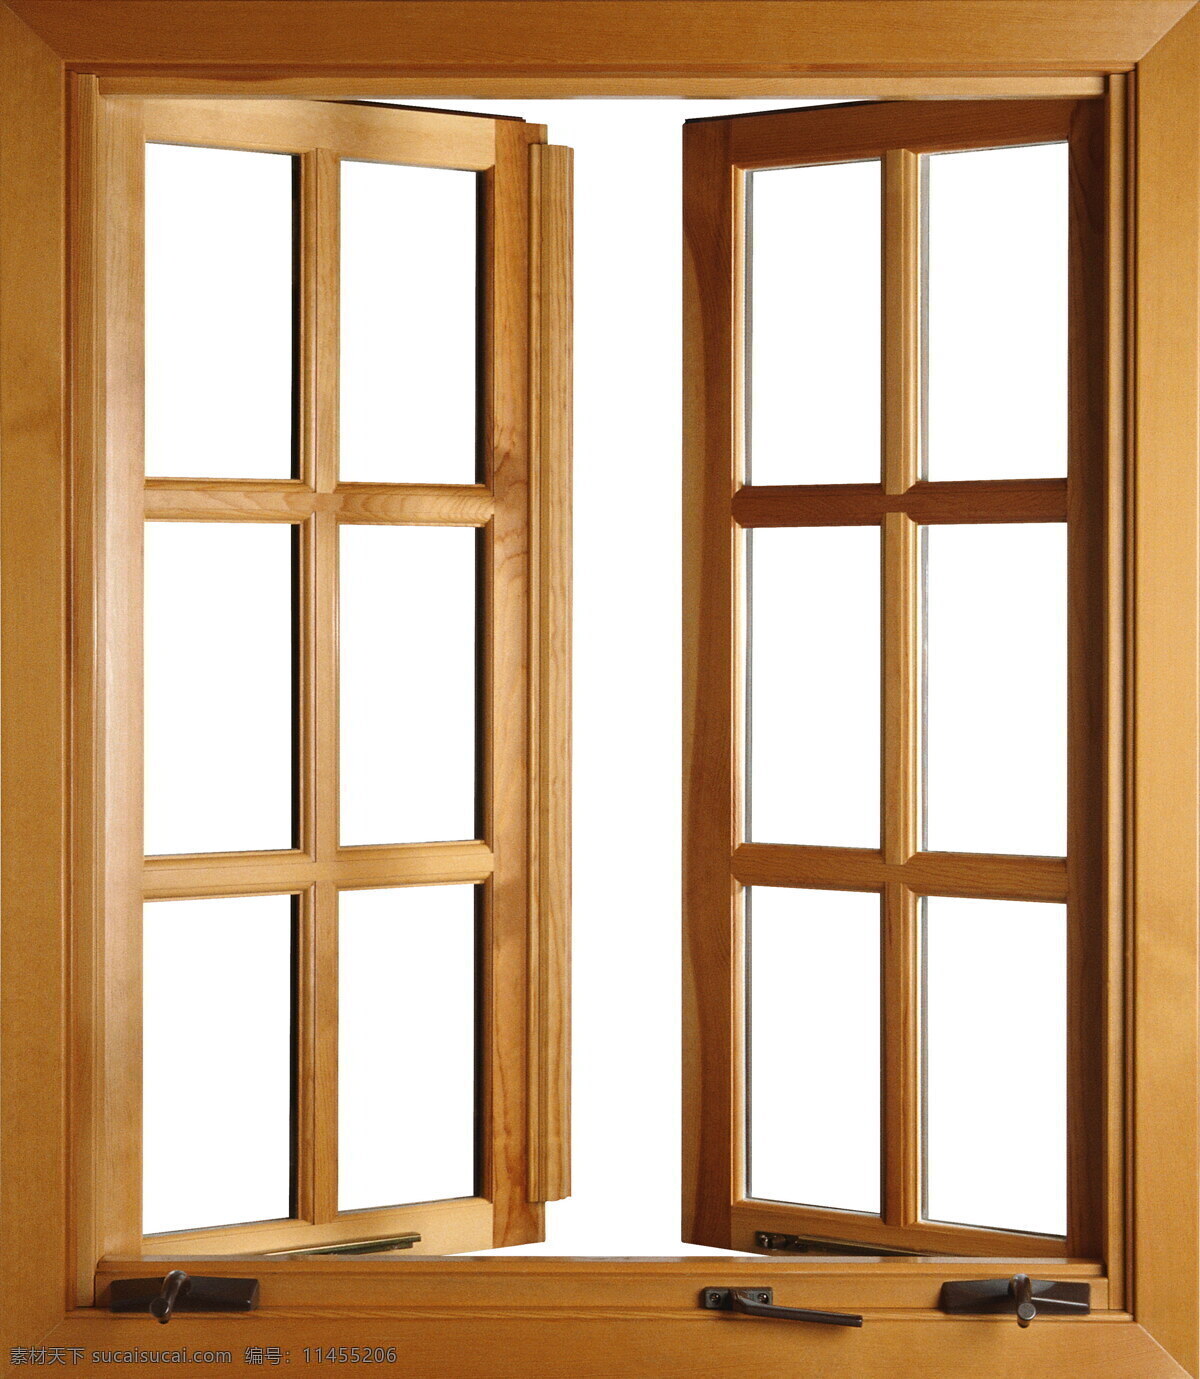 平开窗 贴图0098 贴图 设计素材 玻璃窗 贴图素材 建筑装饰 白色